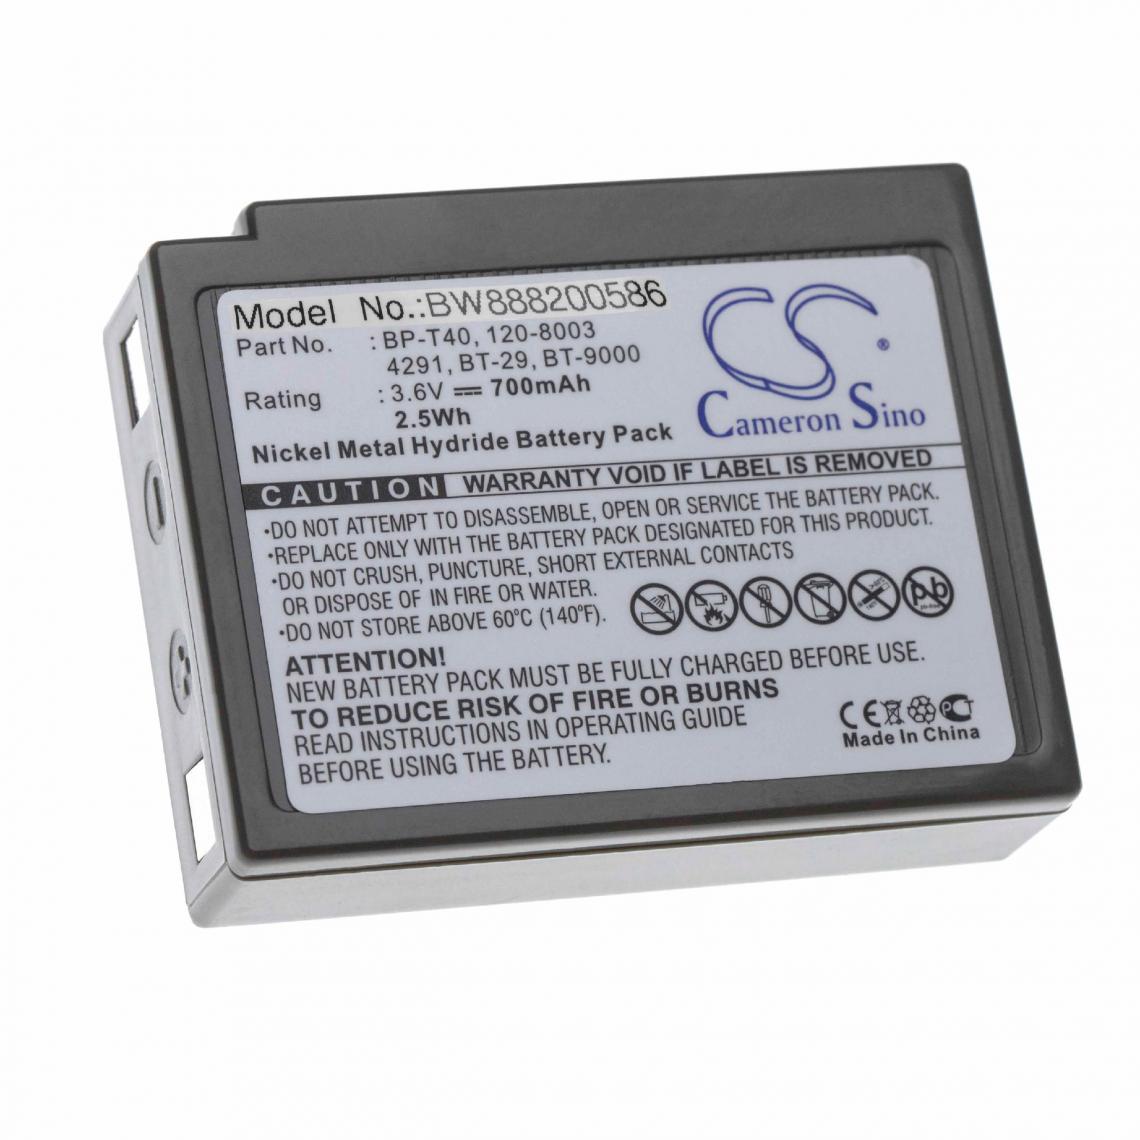 Vhbw - vhbw batterie gris compatible avec RadioShack 23-198, 43-8005, 43-8007, 43-8008, SCT-100 combiné téléphonique téléphone fixe (700mAh, 3.6V, NiMH) - Batterie téléphone